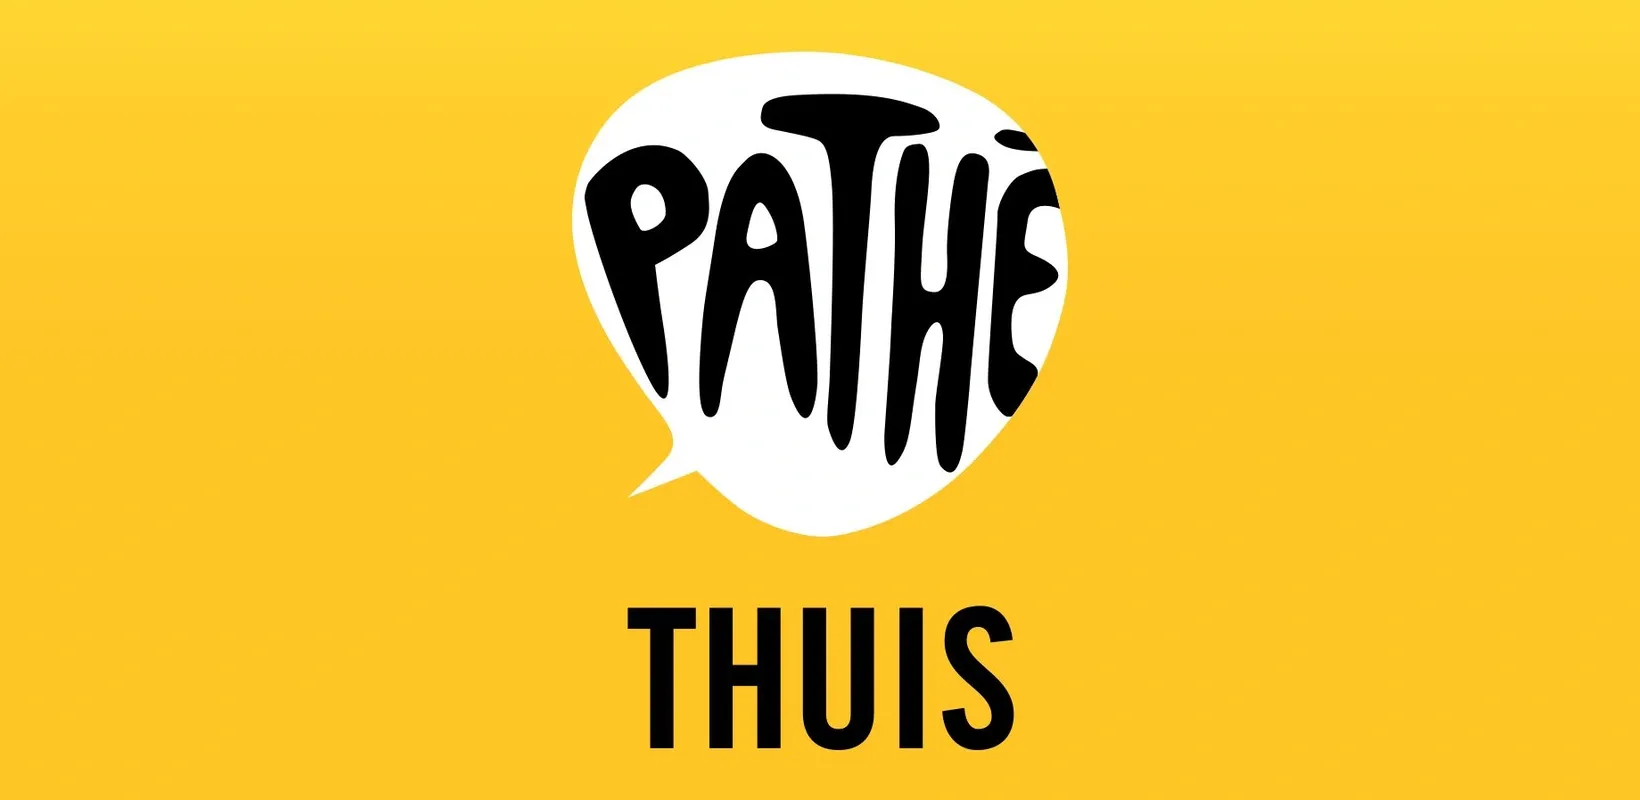 De nieuwste films kijk je met Pathé Thuis vanuit je woonkamer